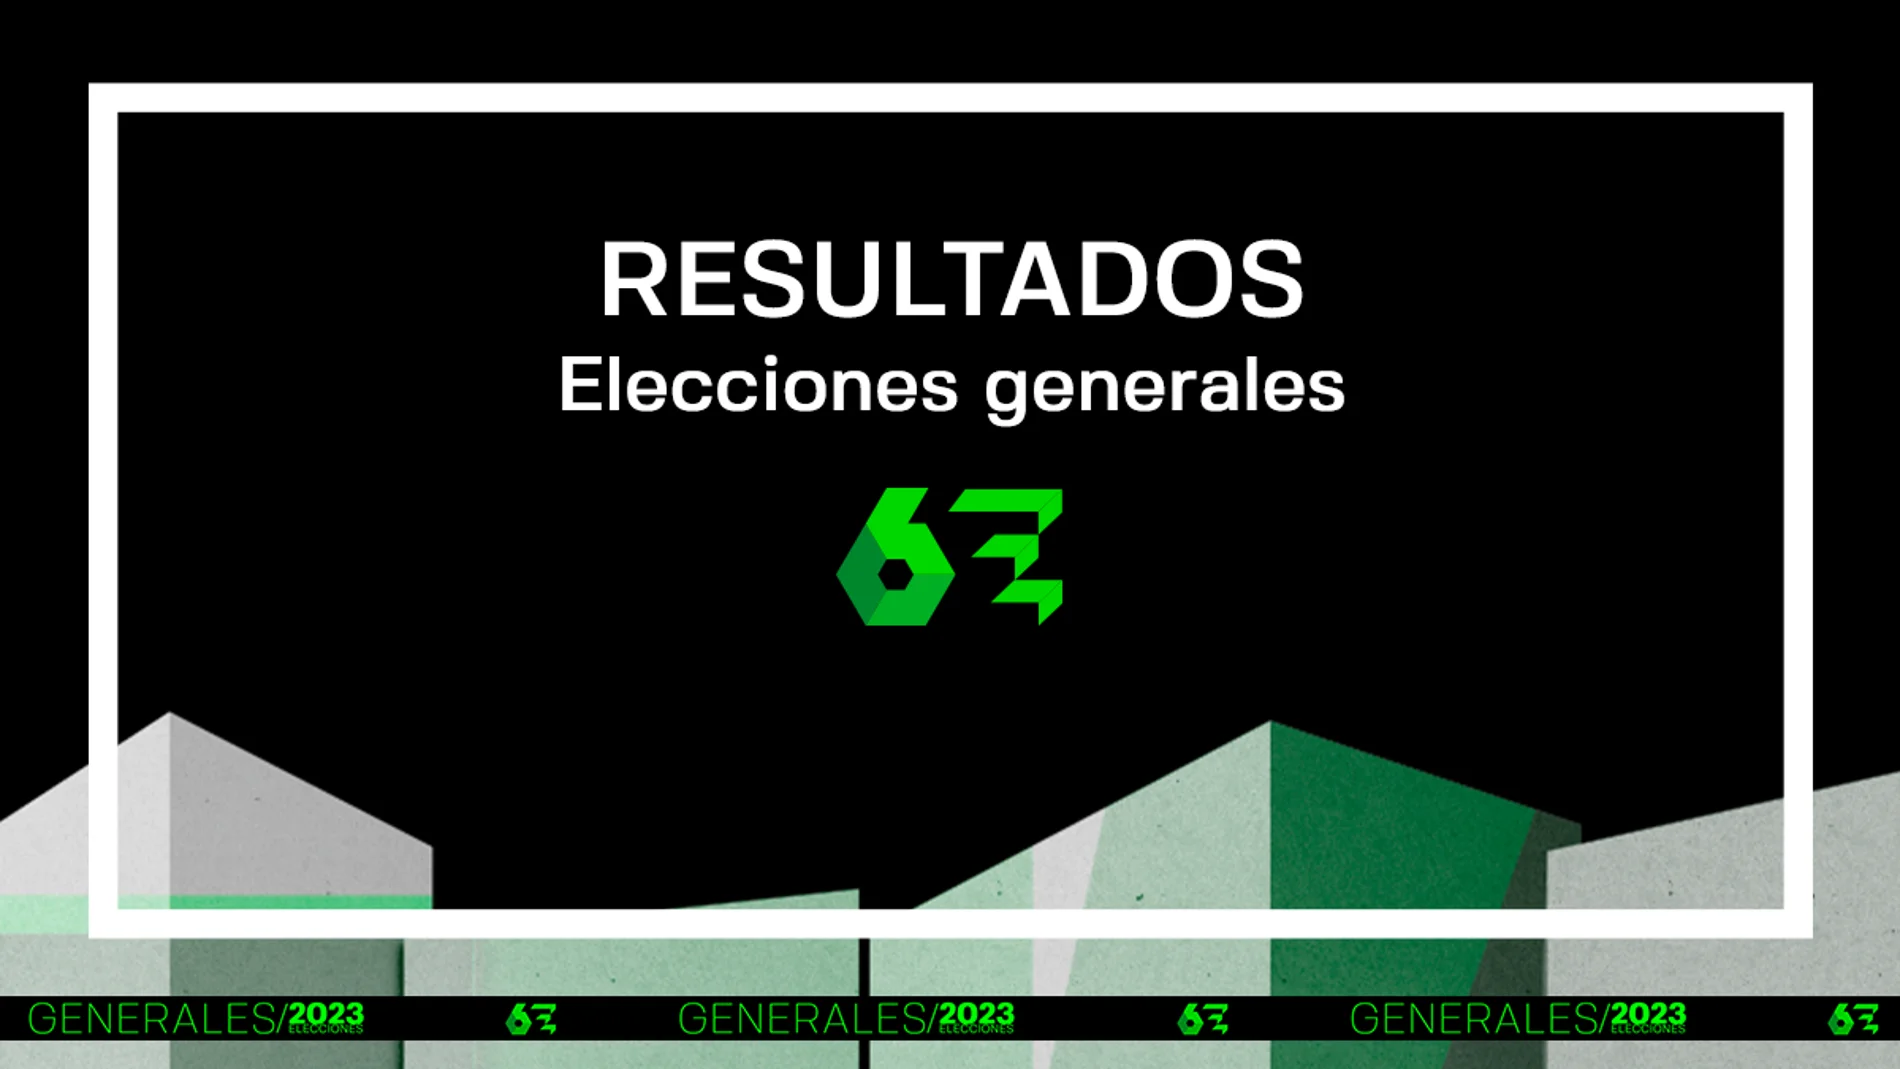 Consulta los resultados de las elecciones generales del 23 de julio de 2023 en laSexta.com